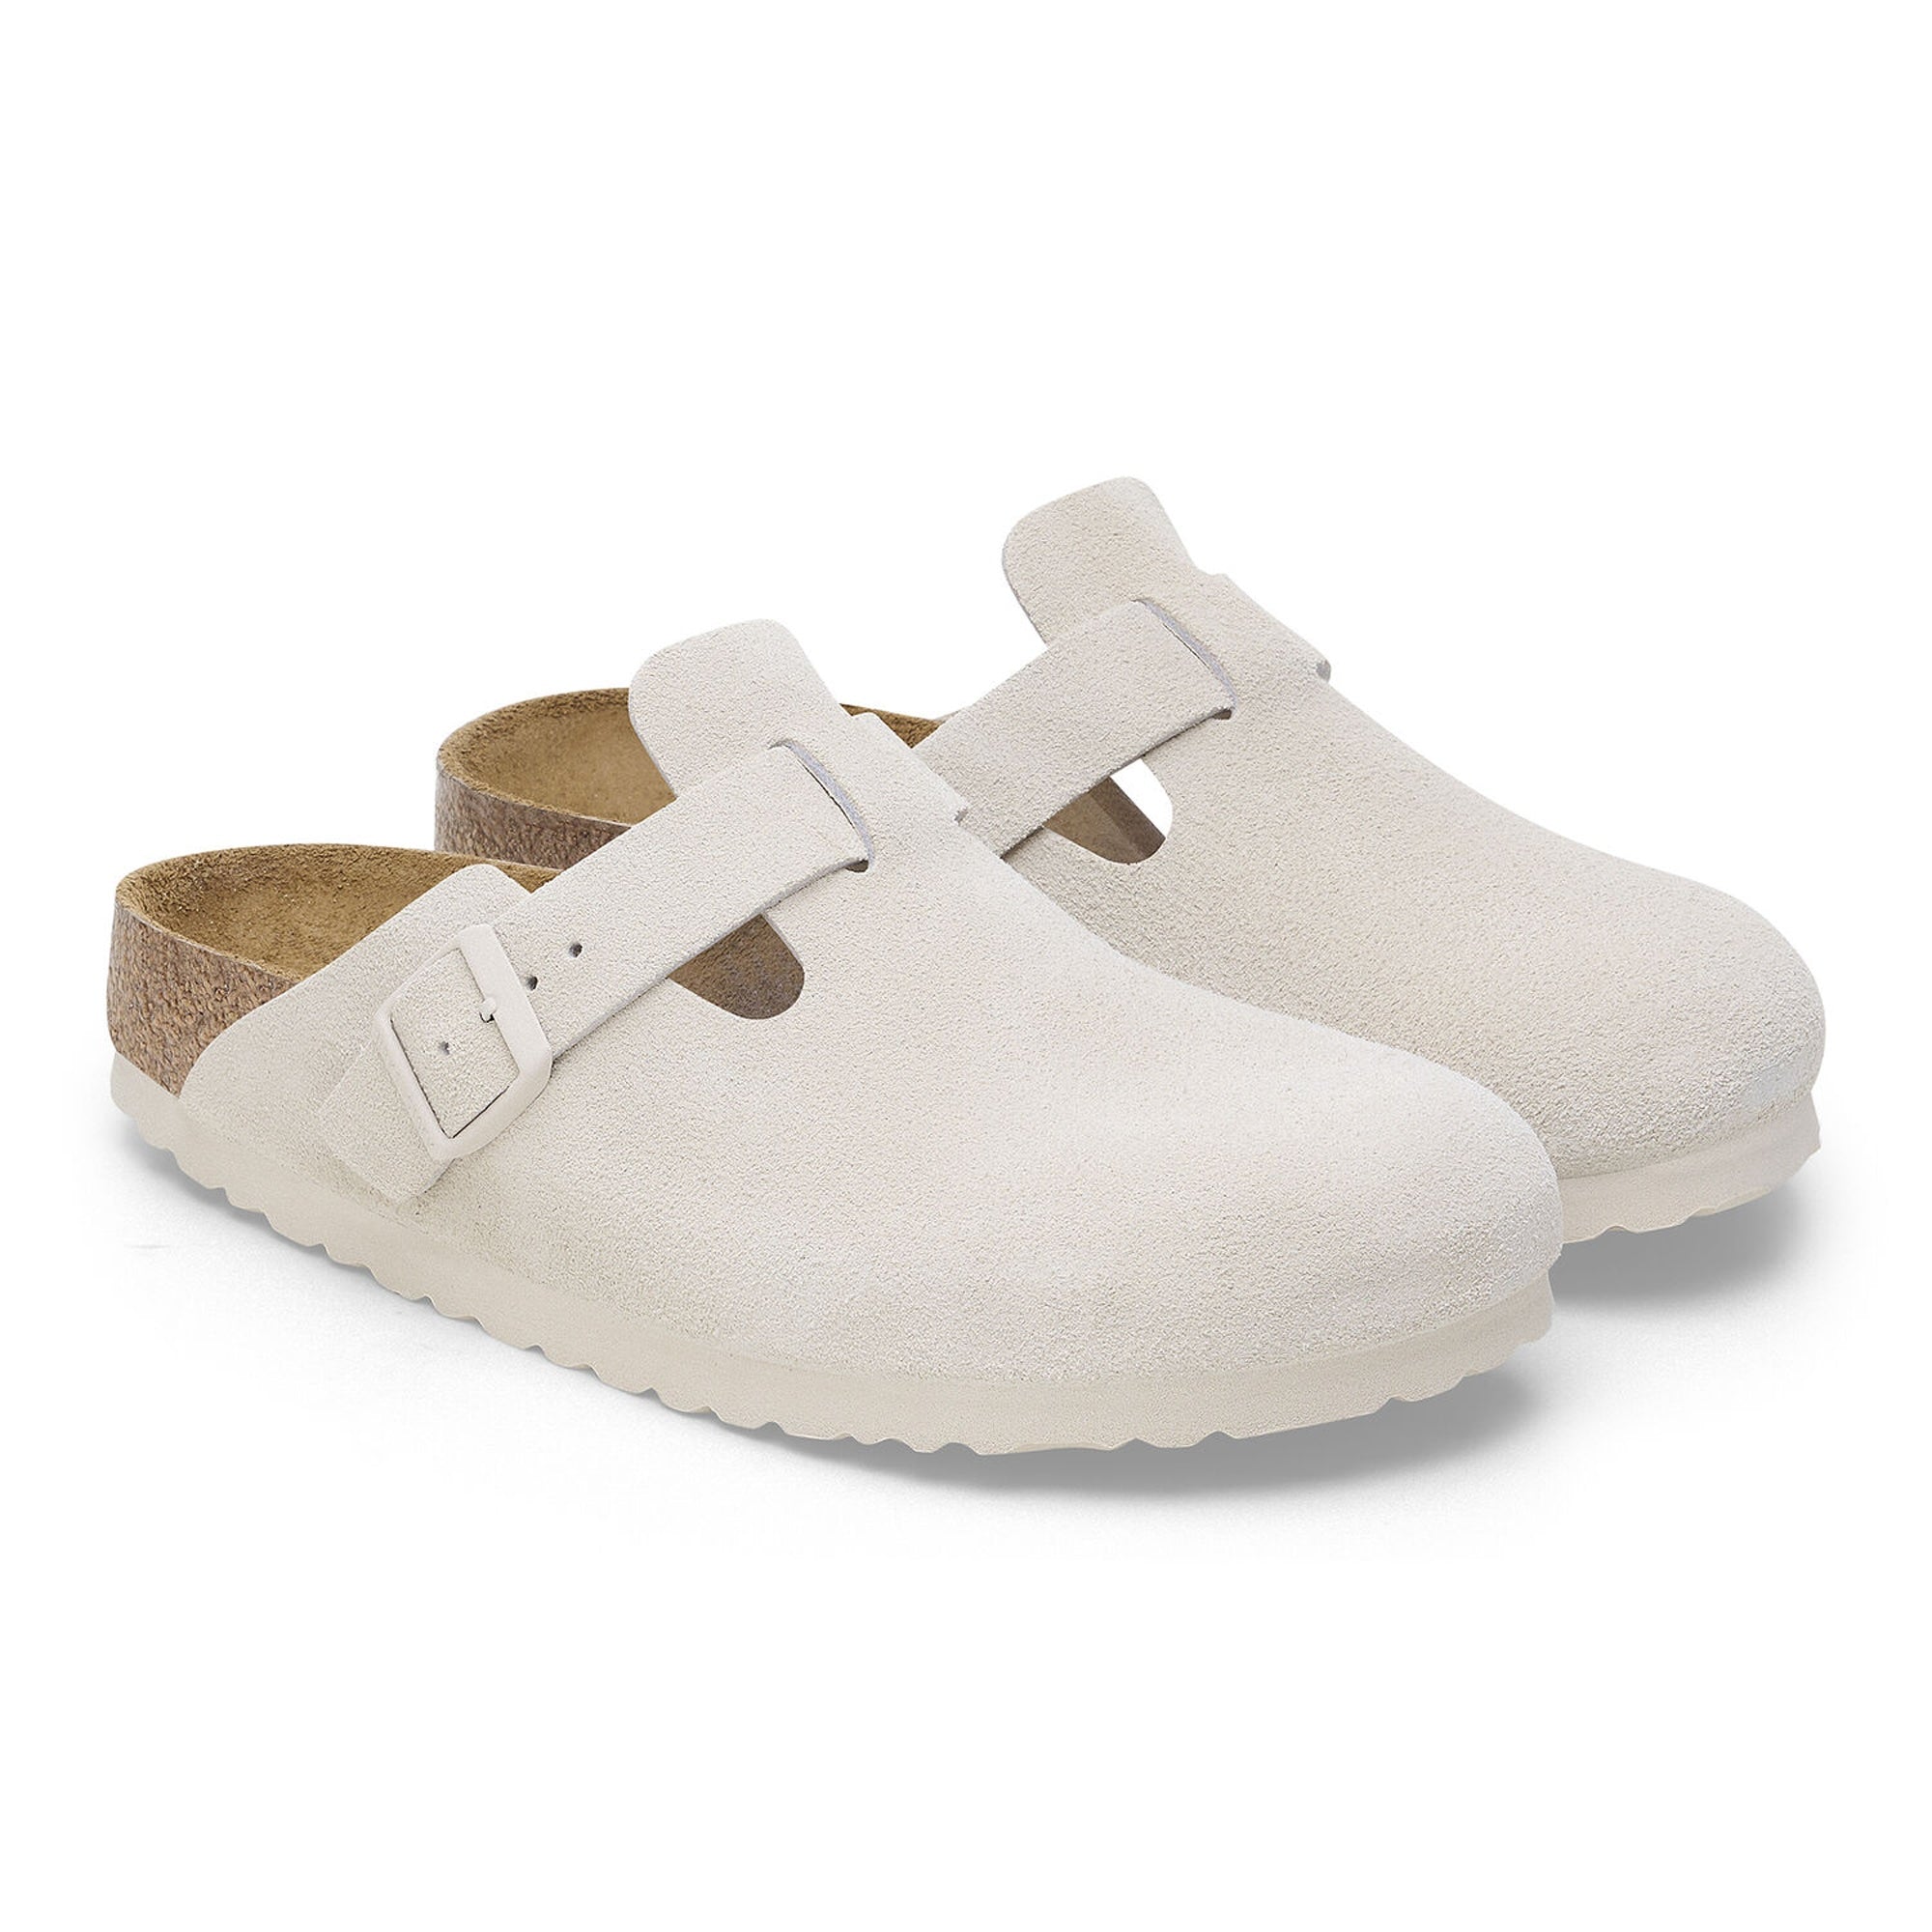 Birkenstock Boston Sandals - Antique White Suede